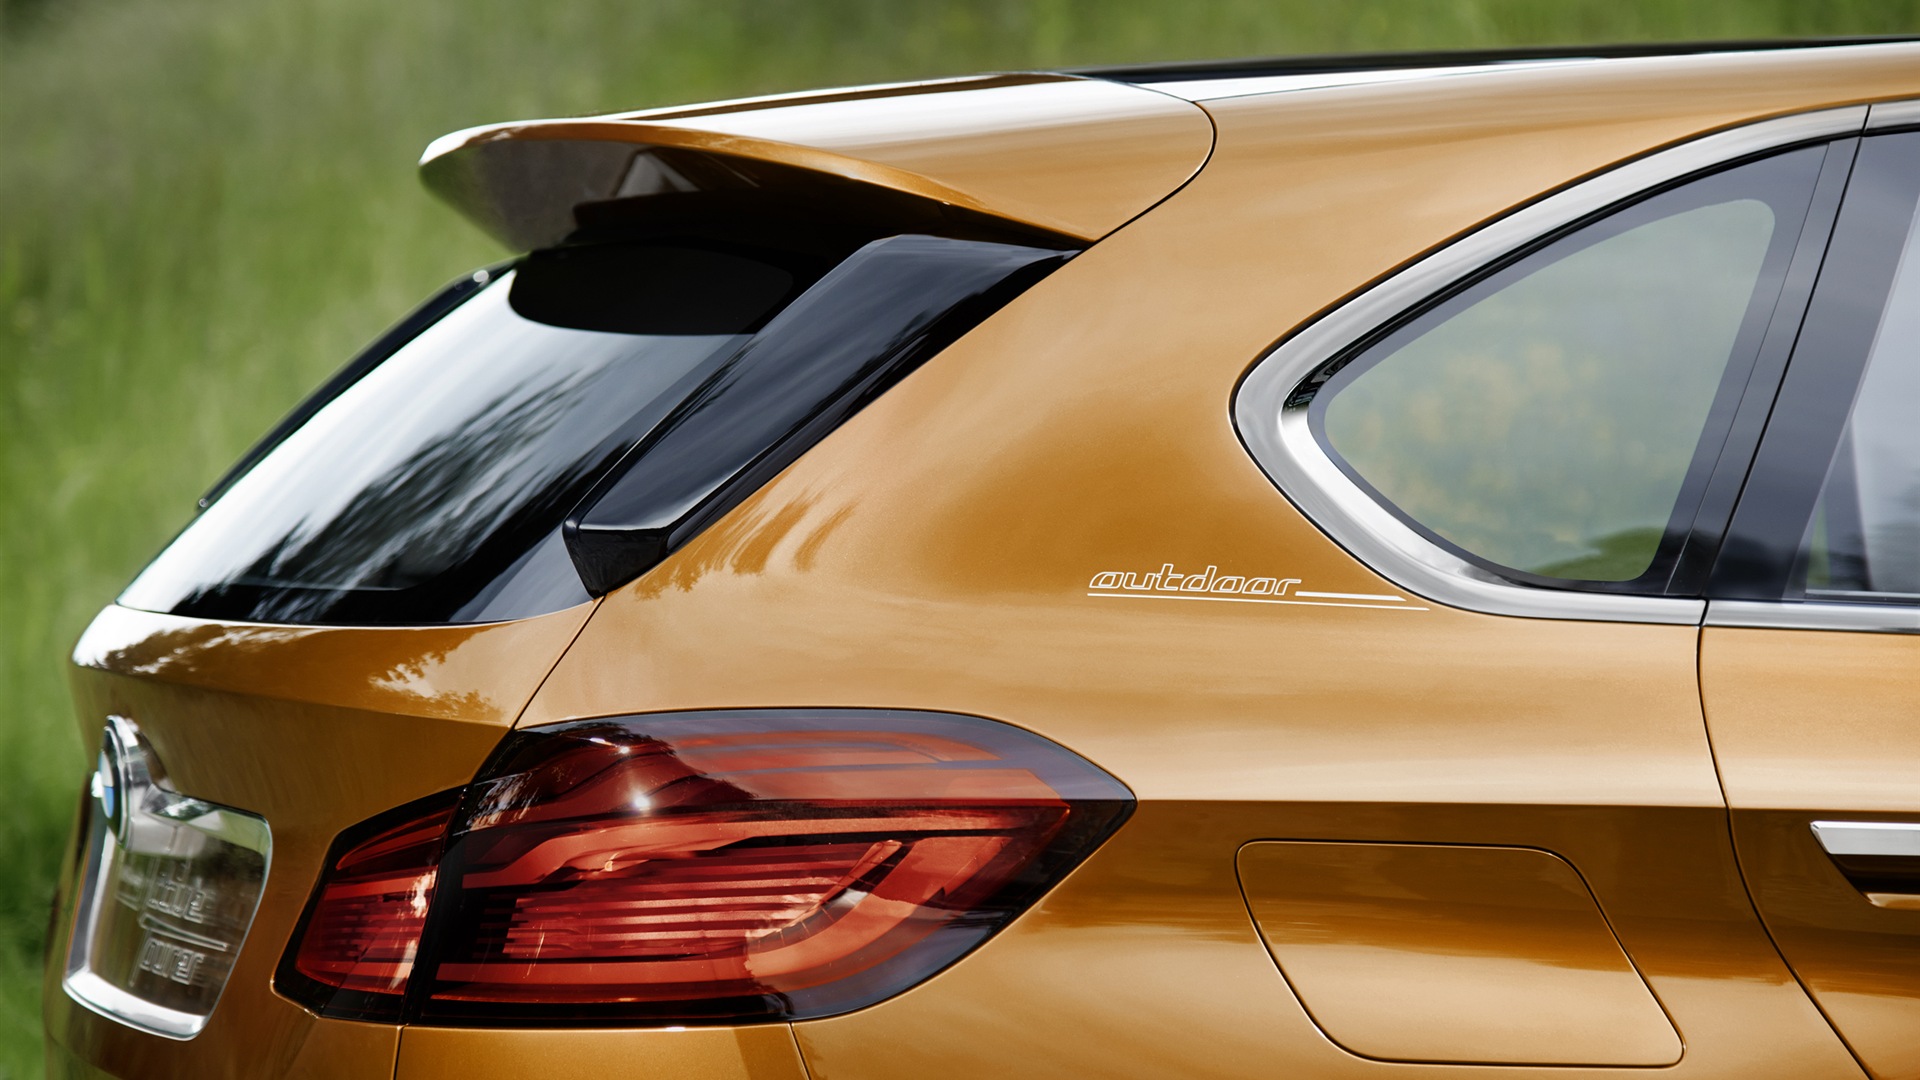 2013 BMW Concept Aktive Tourer HD Wallpaper #19 - 1920x1080